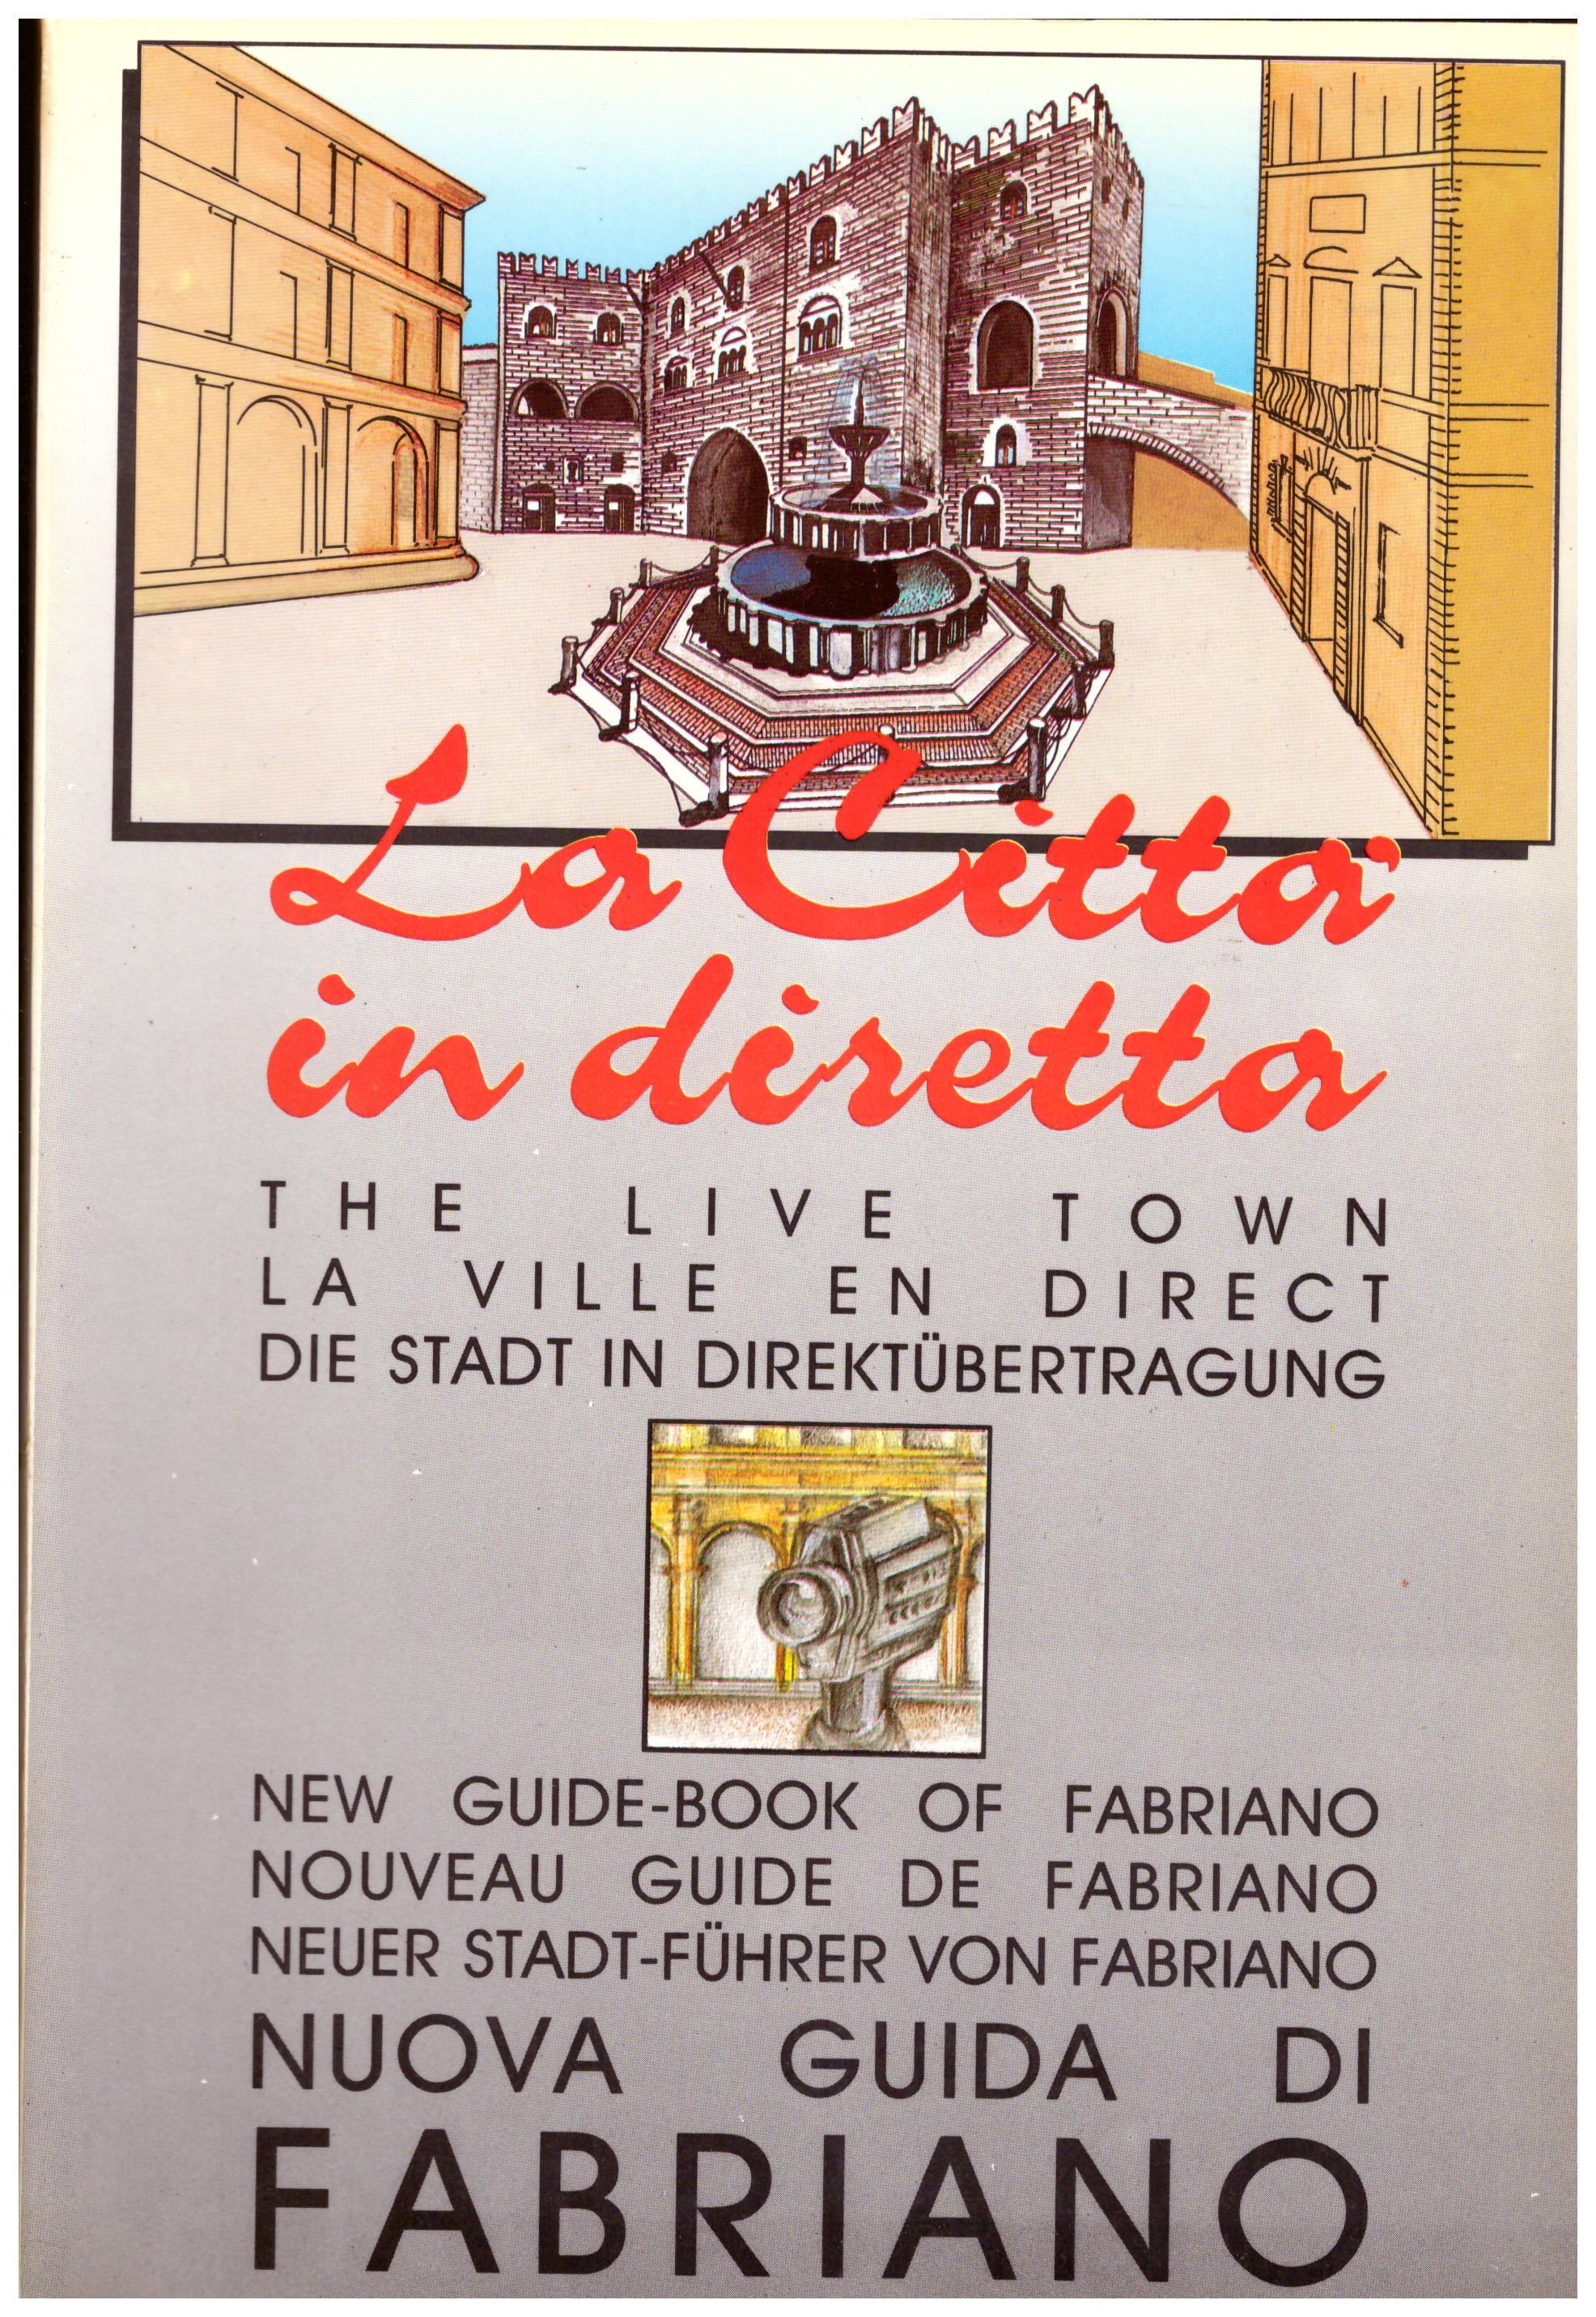 Titolo: La città in diretta, nuova guida di Fabriano Autore : AA.VV. Editore: PUBBLY 2000 Editrice